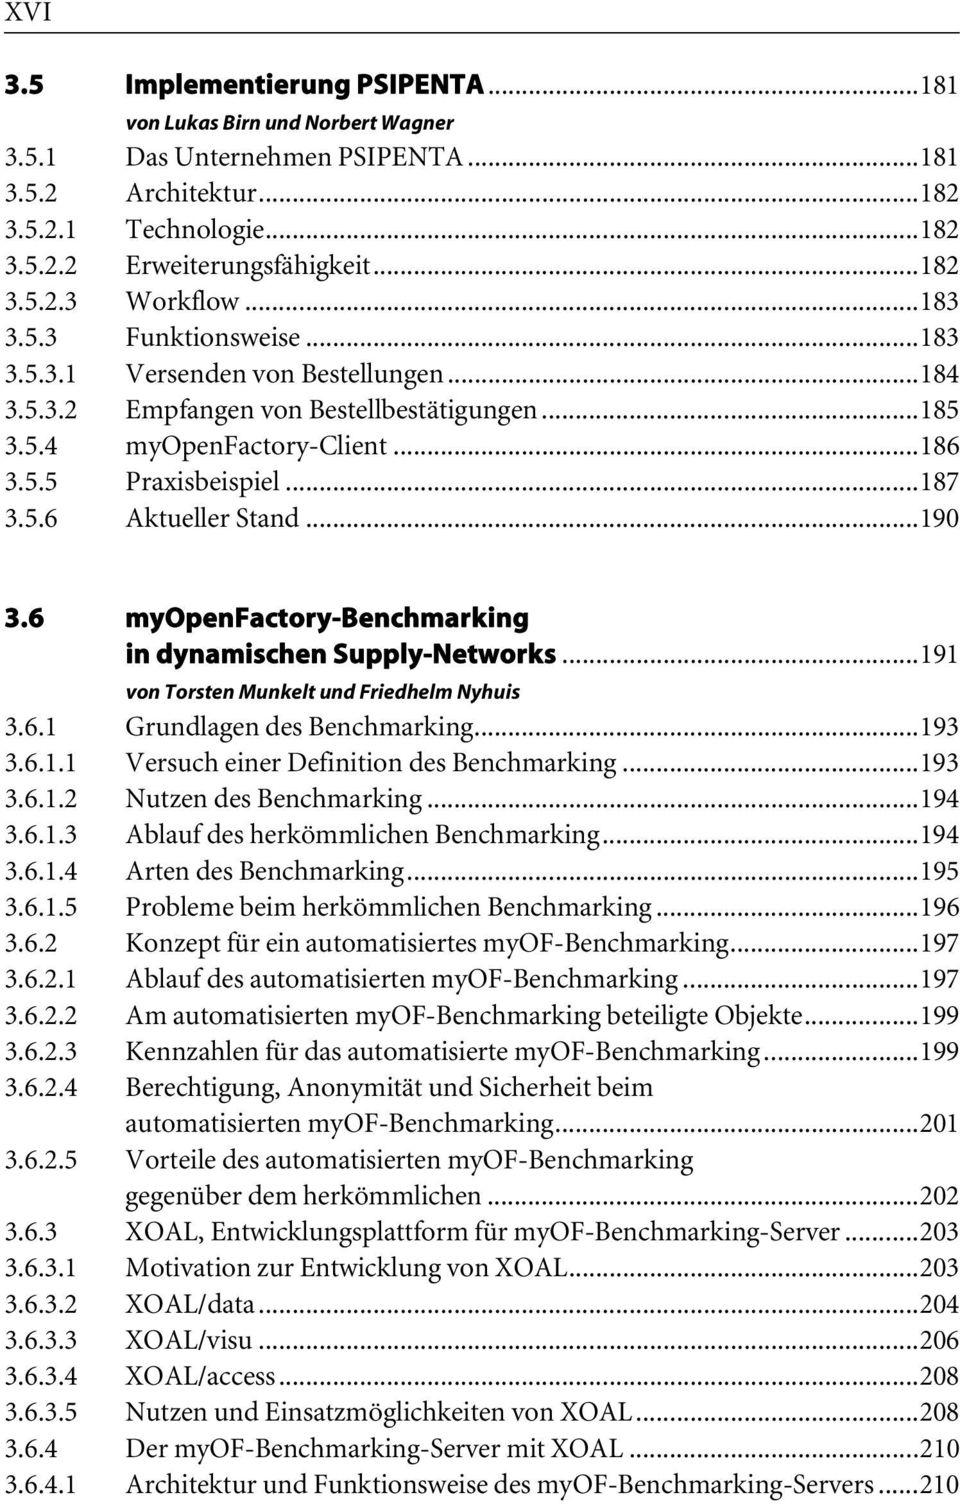 ..190 3.6 myopenfactory-benchmarking in dynamischen Supply-Networks...191 von Torsten Munkelt und Friedhelm Nyhuis 3.6.1 Grundlagen des Benchmarking...193 3.6.1.1 Versuch einer Definition des Benchmarking.